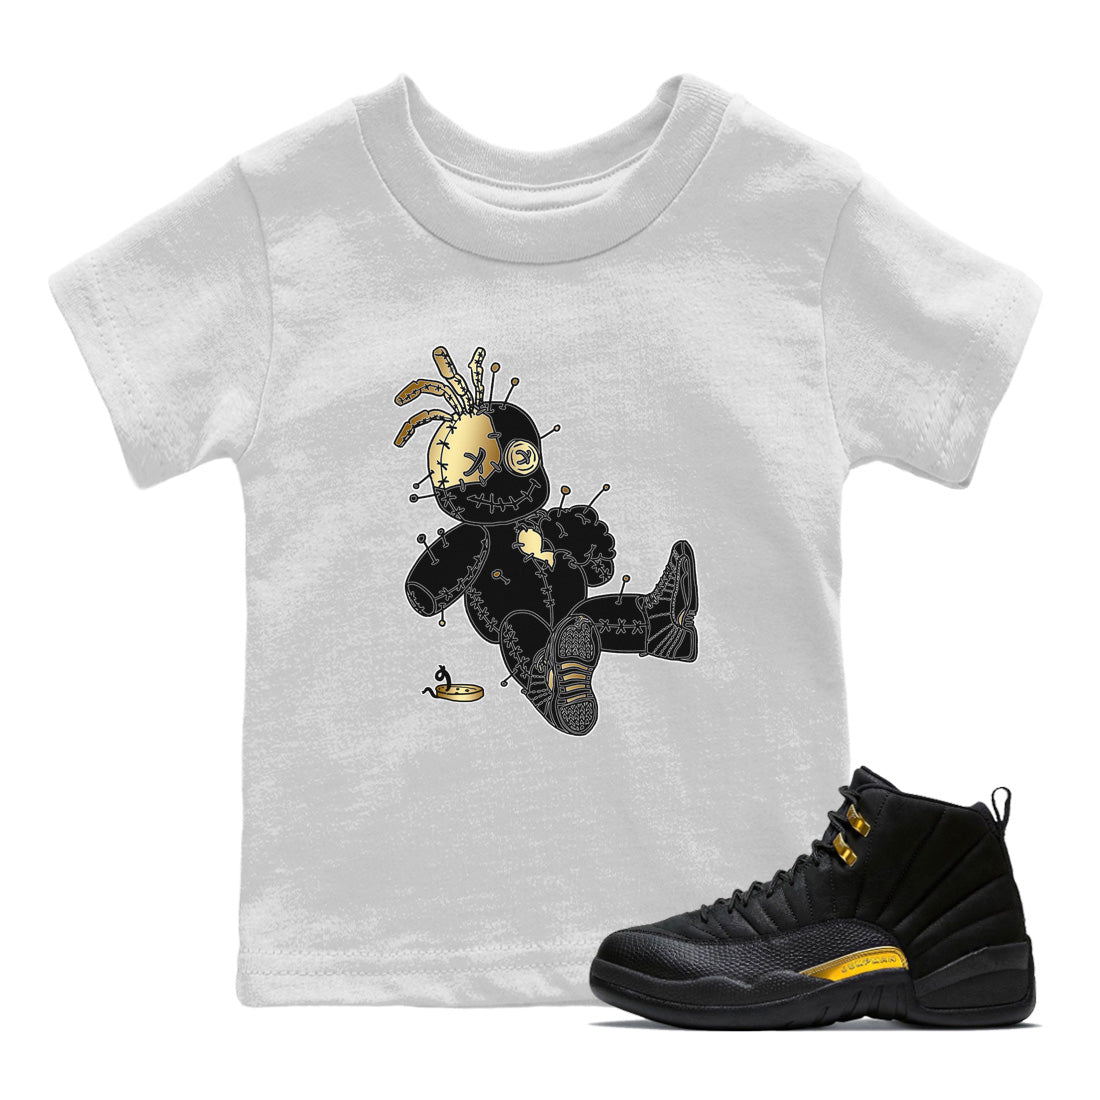 Jordan 12 Black Taxi Sneaker Match Tees Voodoo Doll Sneaker Tees Jordan 12 Black Taxi Sneaker Release Tees Kids Shirts